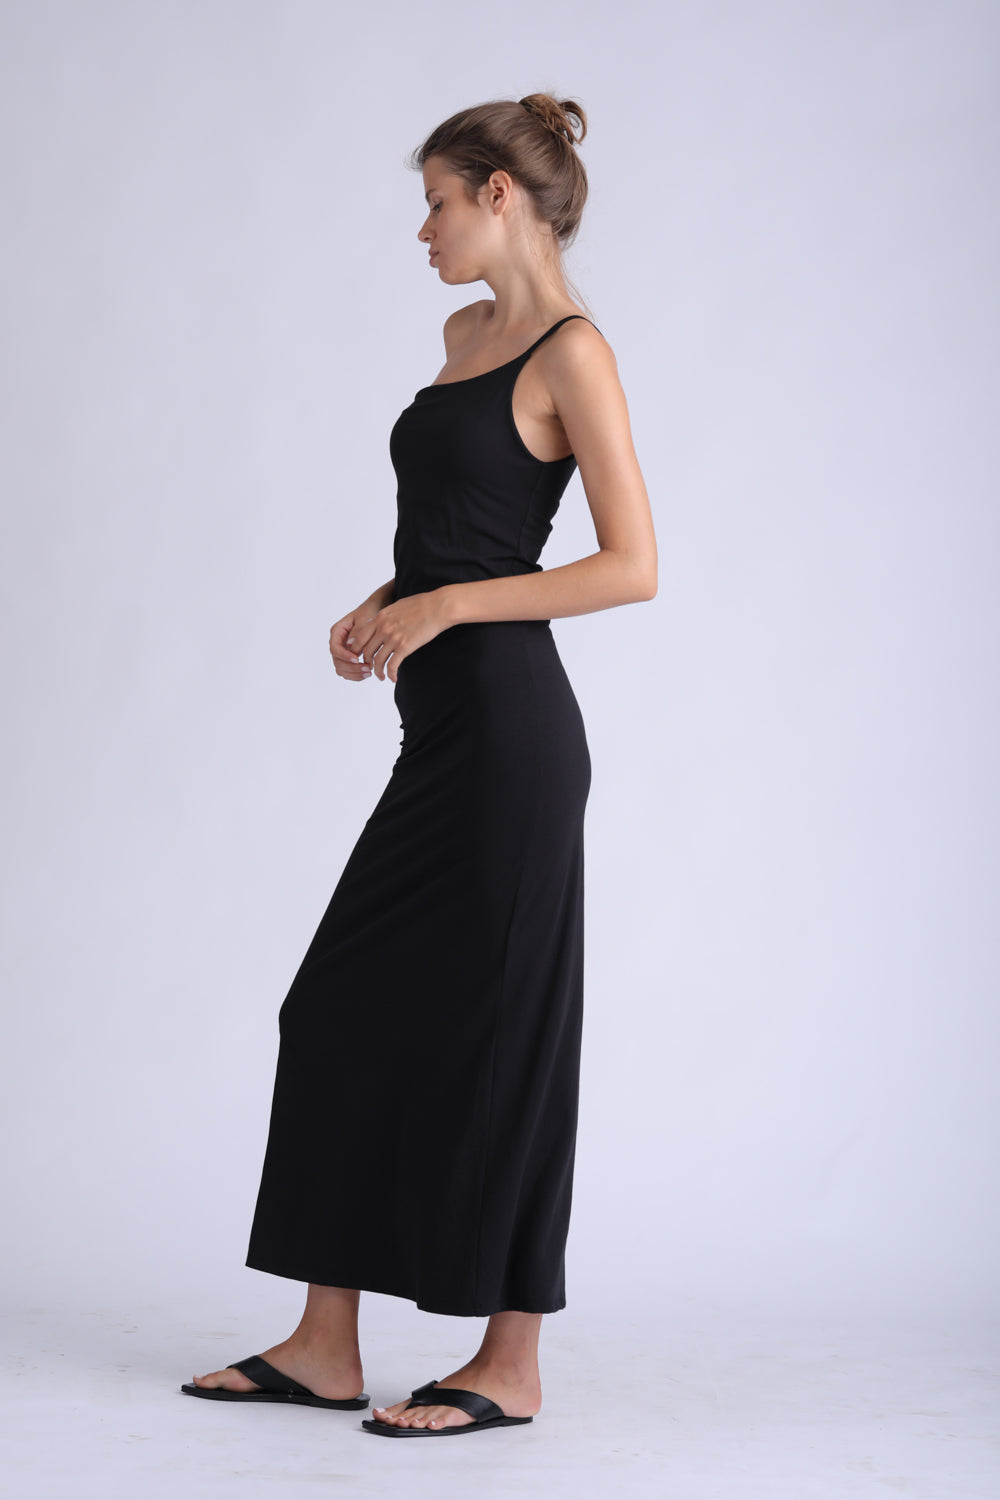 Slim One Shoulder Black Dress